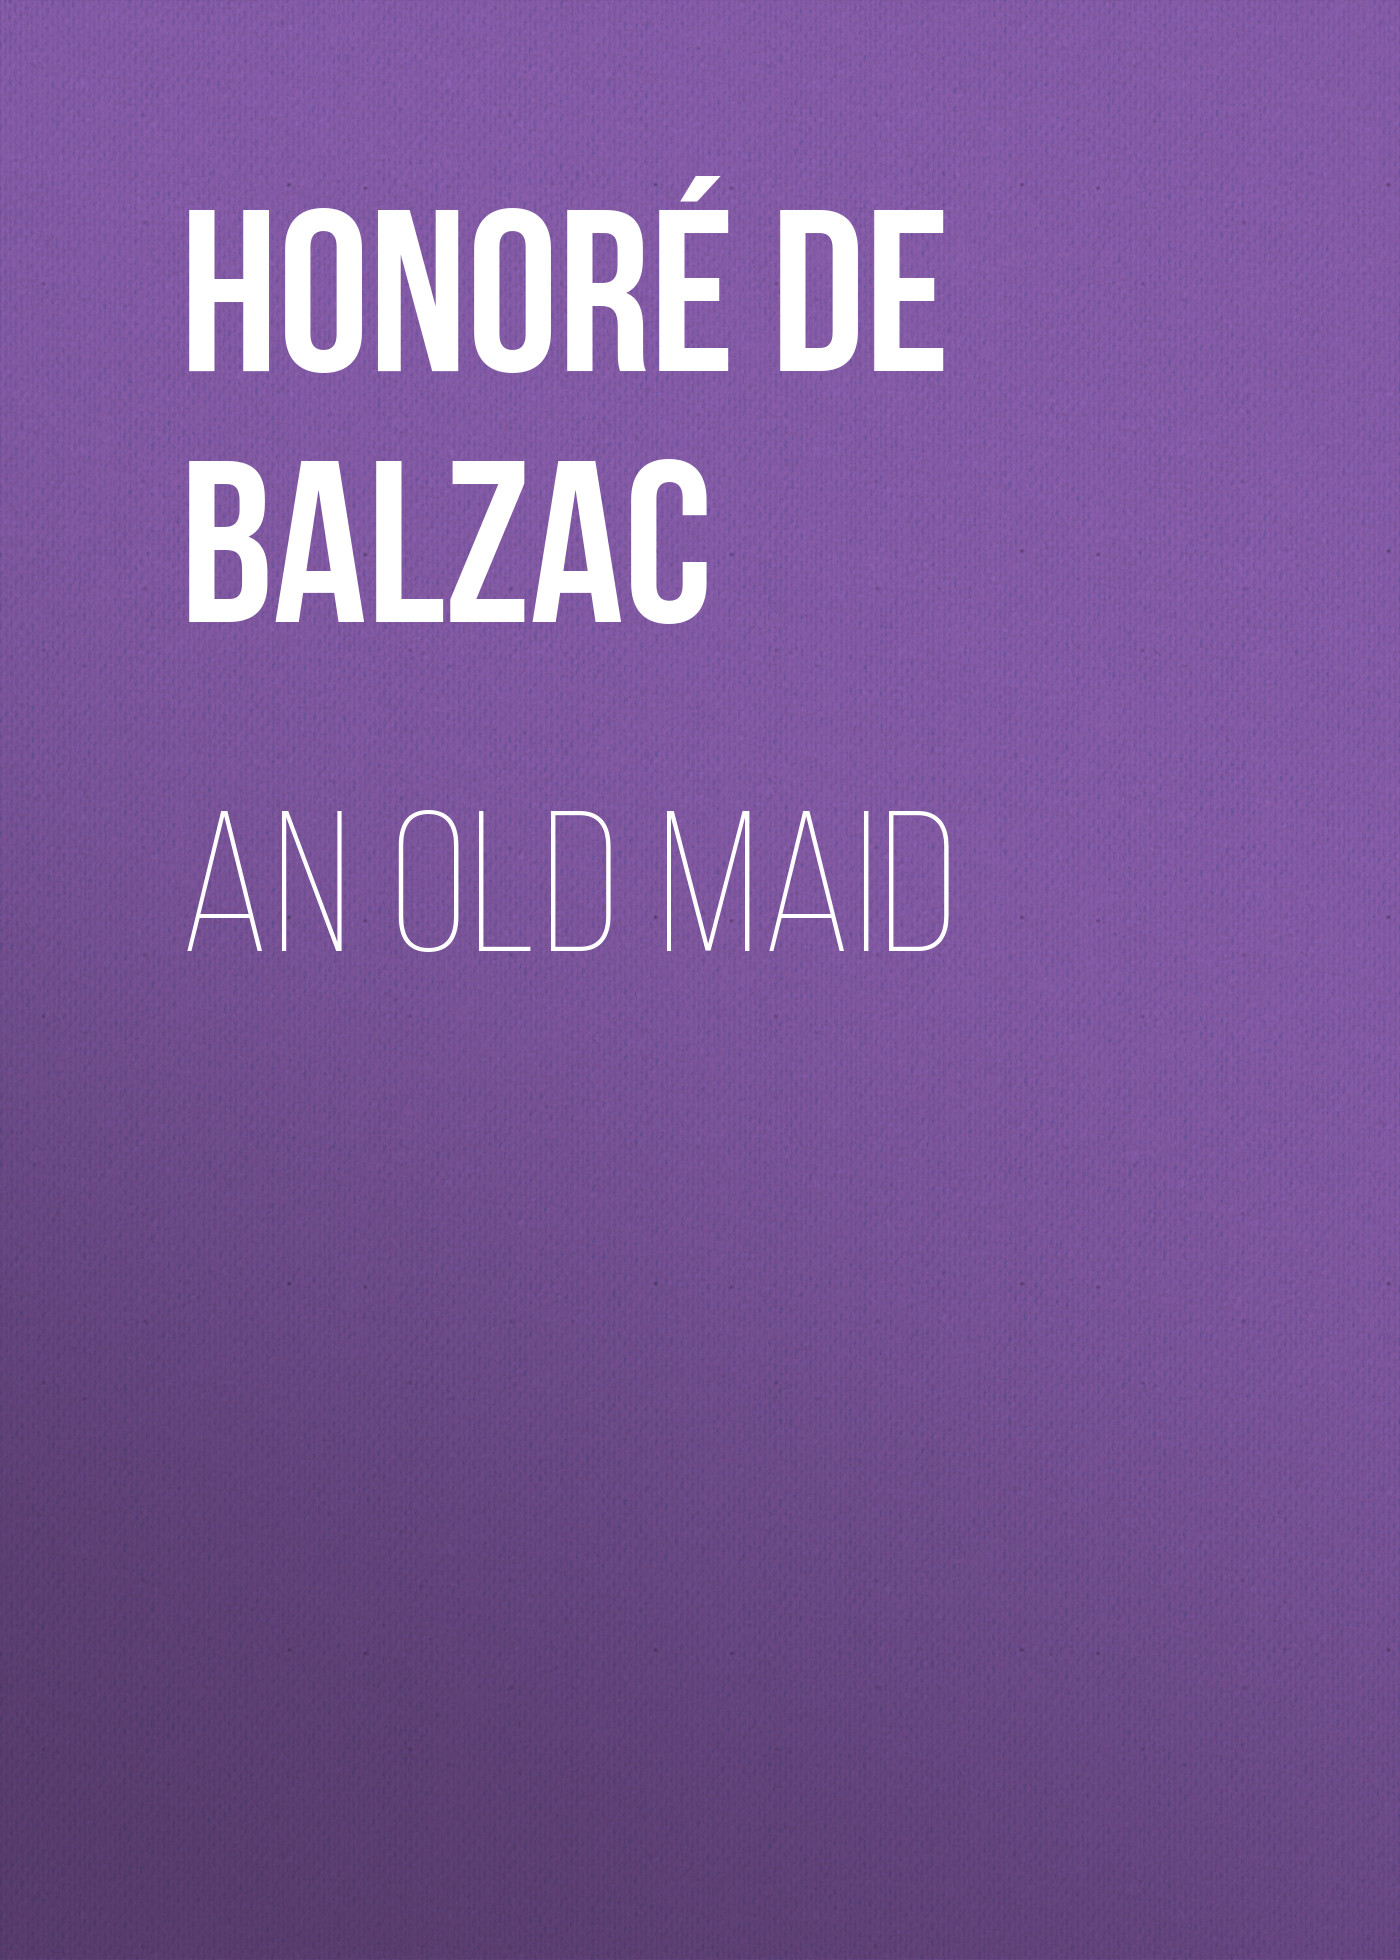 Книга An Old Maid из серии , созданная Honoré Balzac, может относится к жанру Литература 19 века, Зарубежная старинная литература, Зарубежная классика. Стоимость электронной книги An Old Maid с идентификатором 25020387 составляет 0 руб.